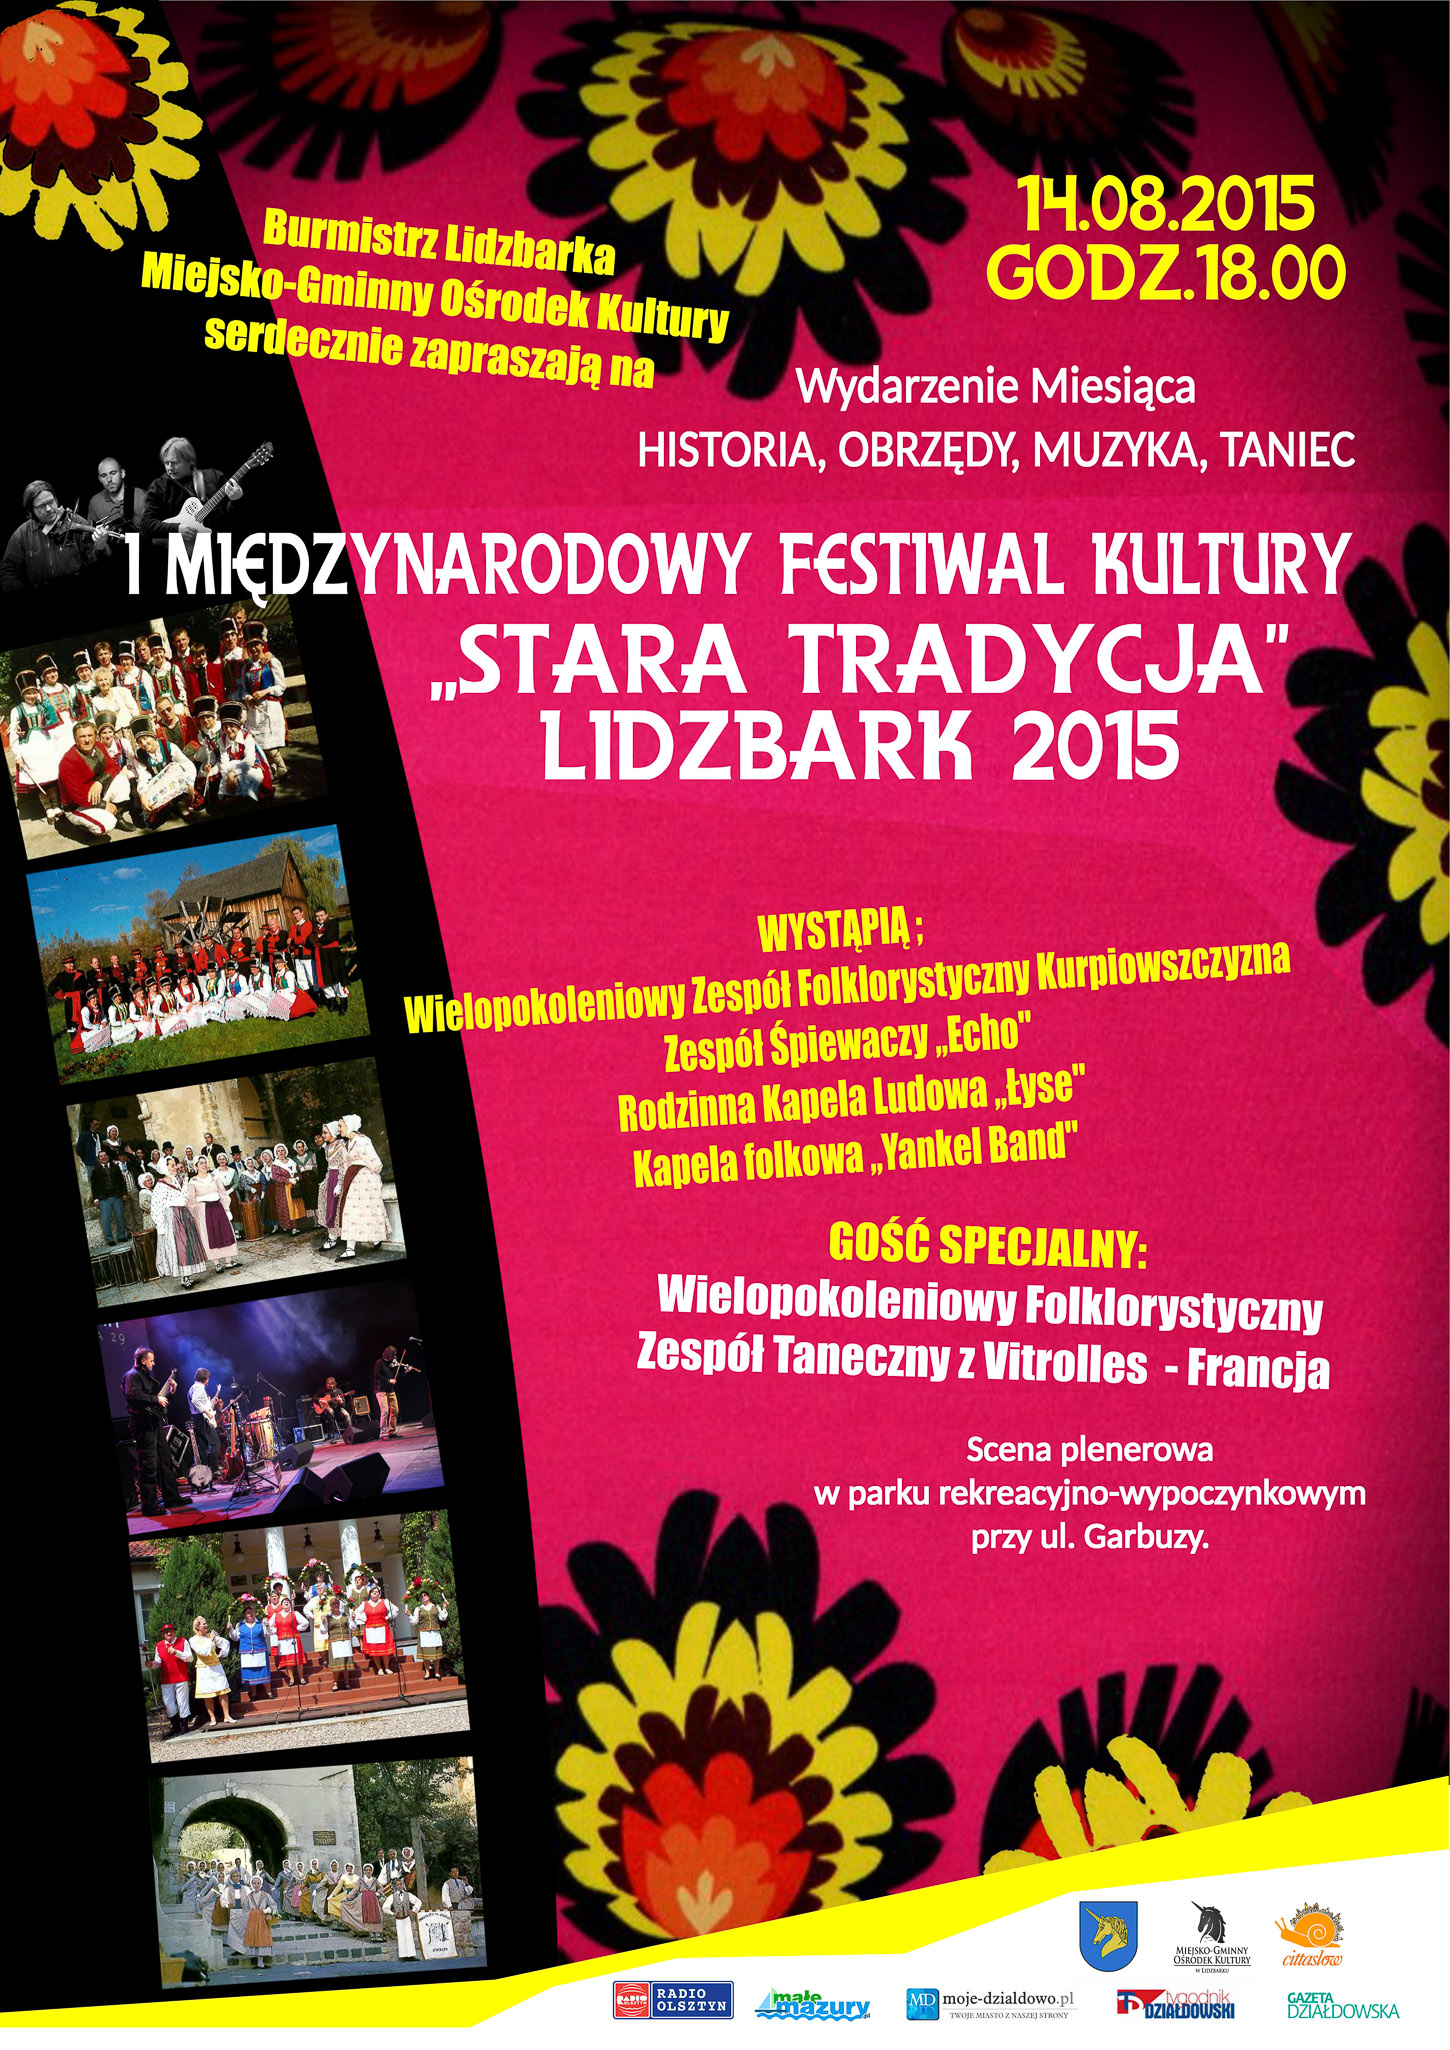 Zapraszamy na I Międzynarodowy Festiwal Kultury "Stara Tradycja'' Lidzbark 2015